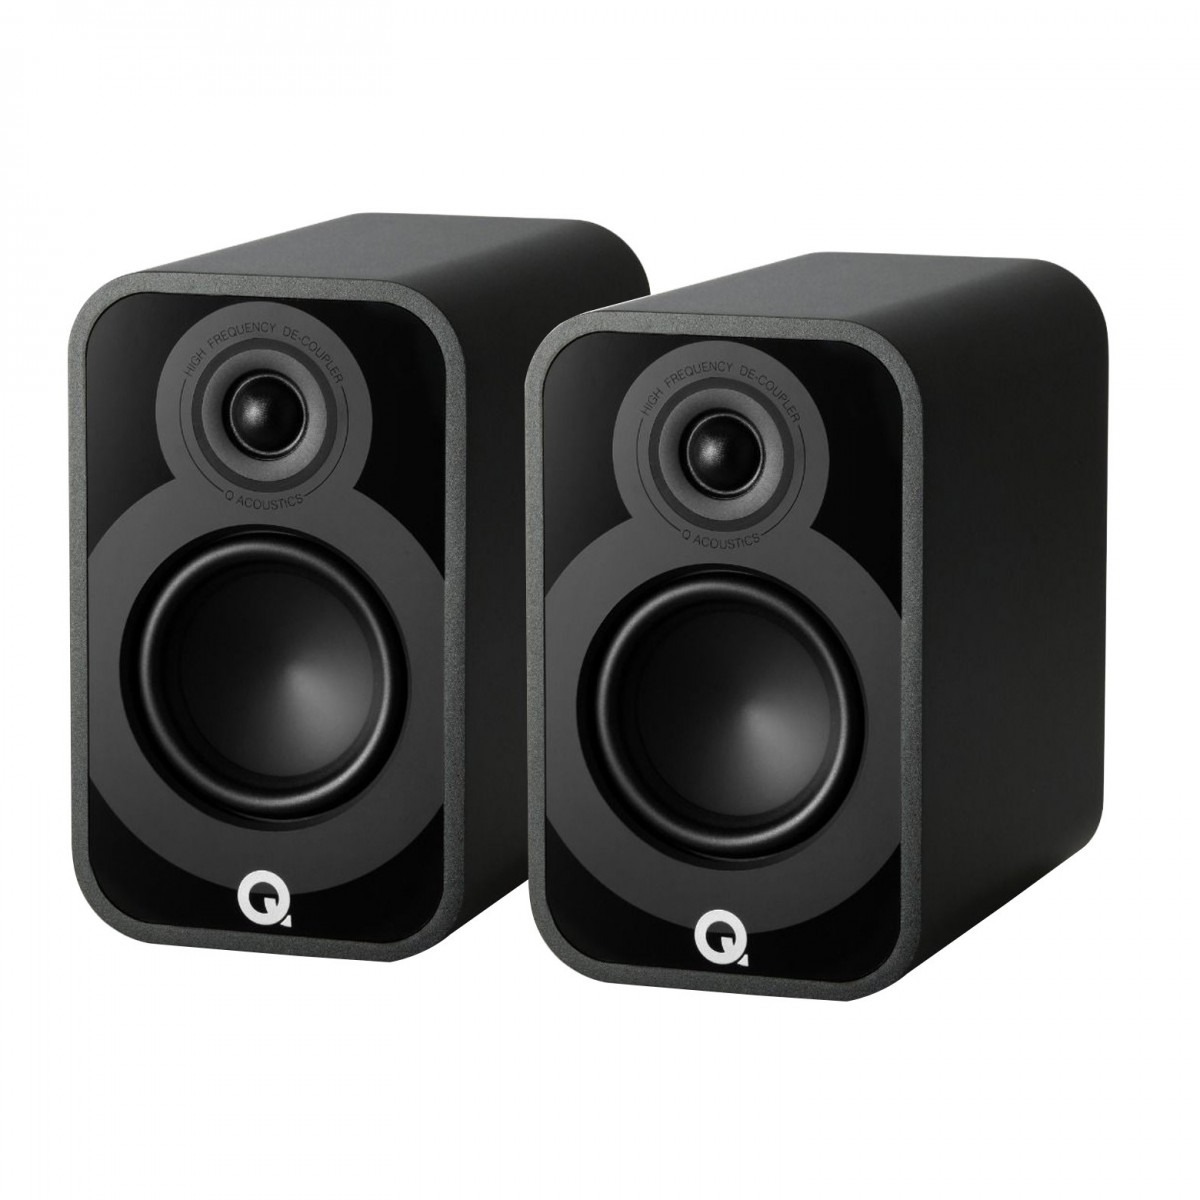 Полочная акустика Q-Acoustics Q5020 (QA5022) Satin Black полочная акустика q acoustics q3020i qa3520 graphite grey